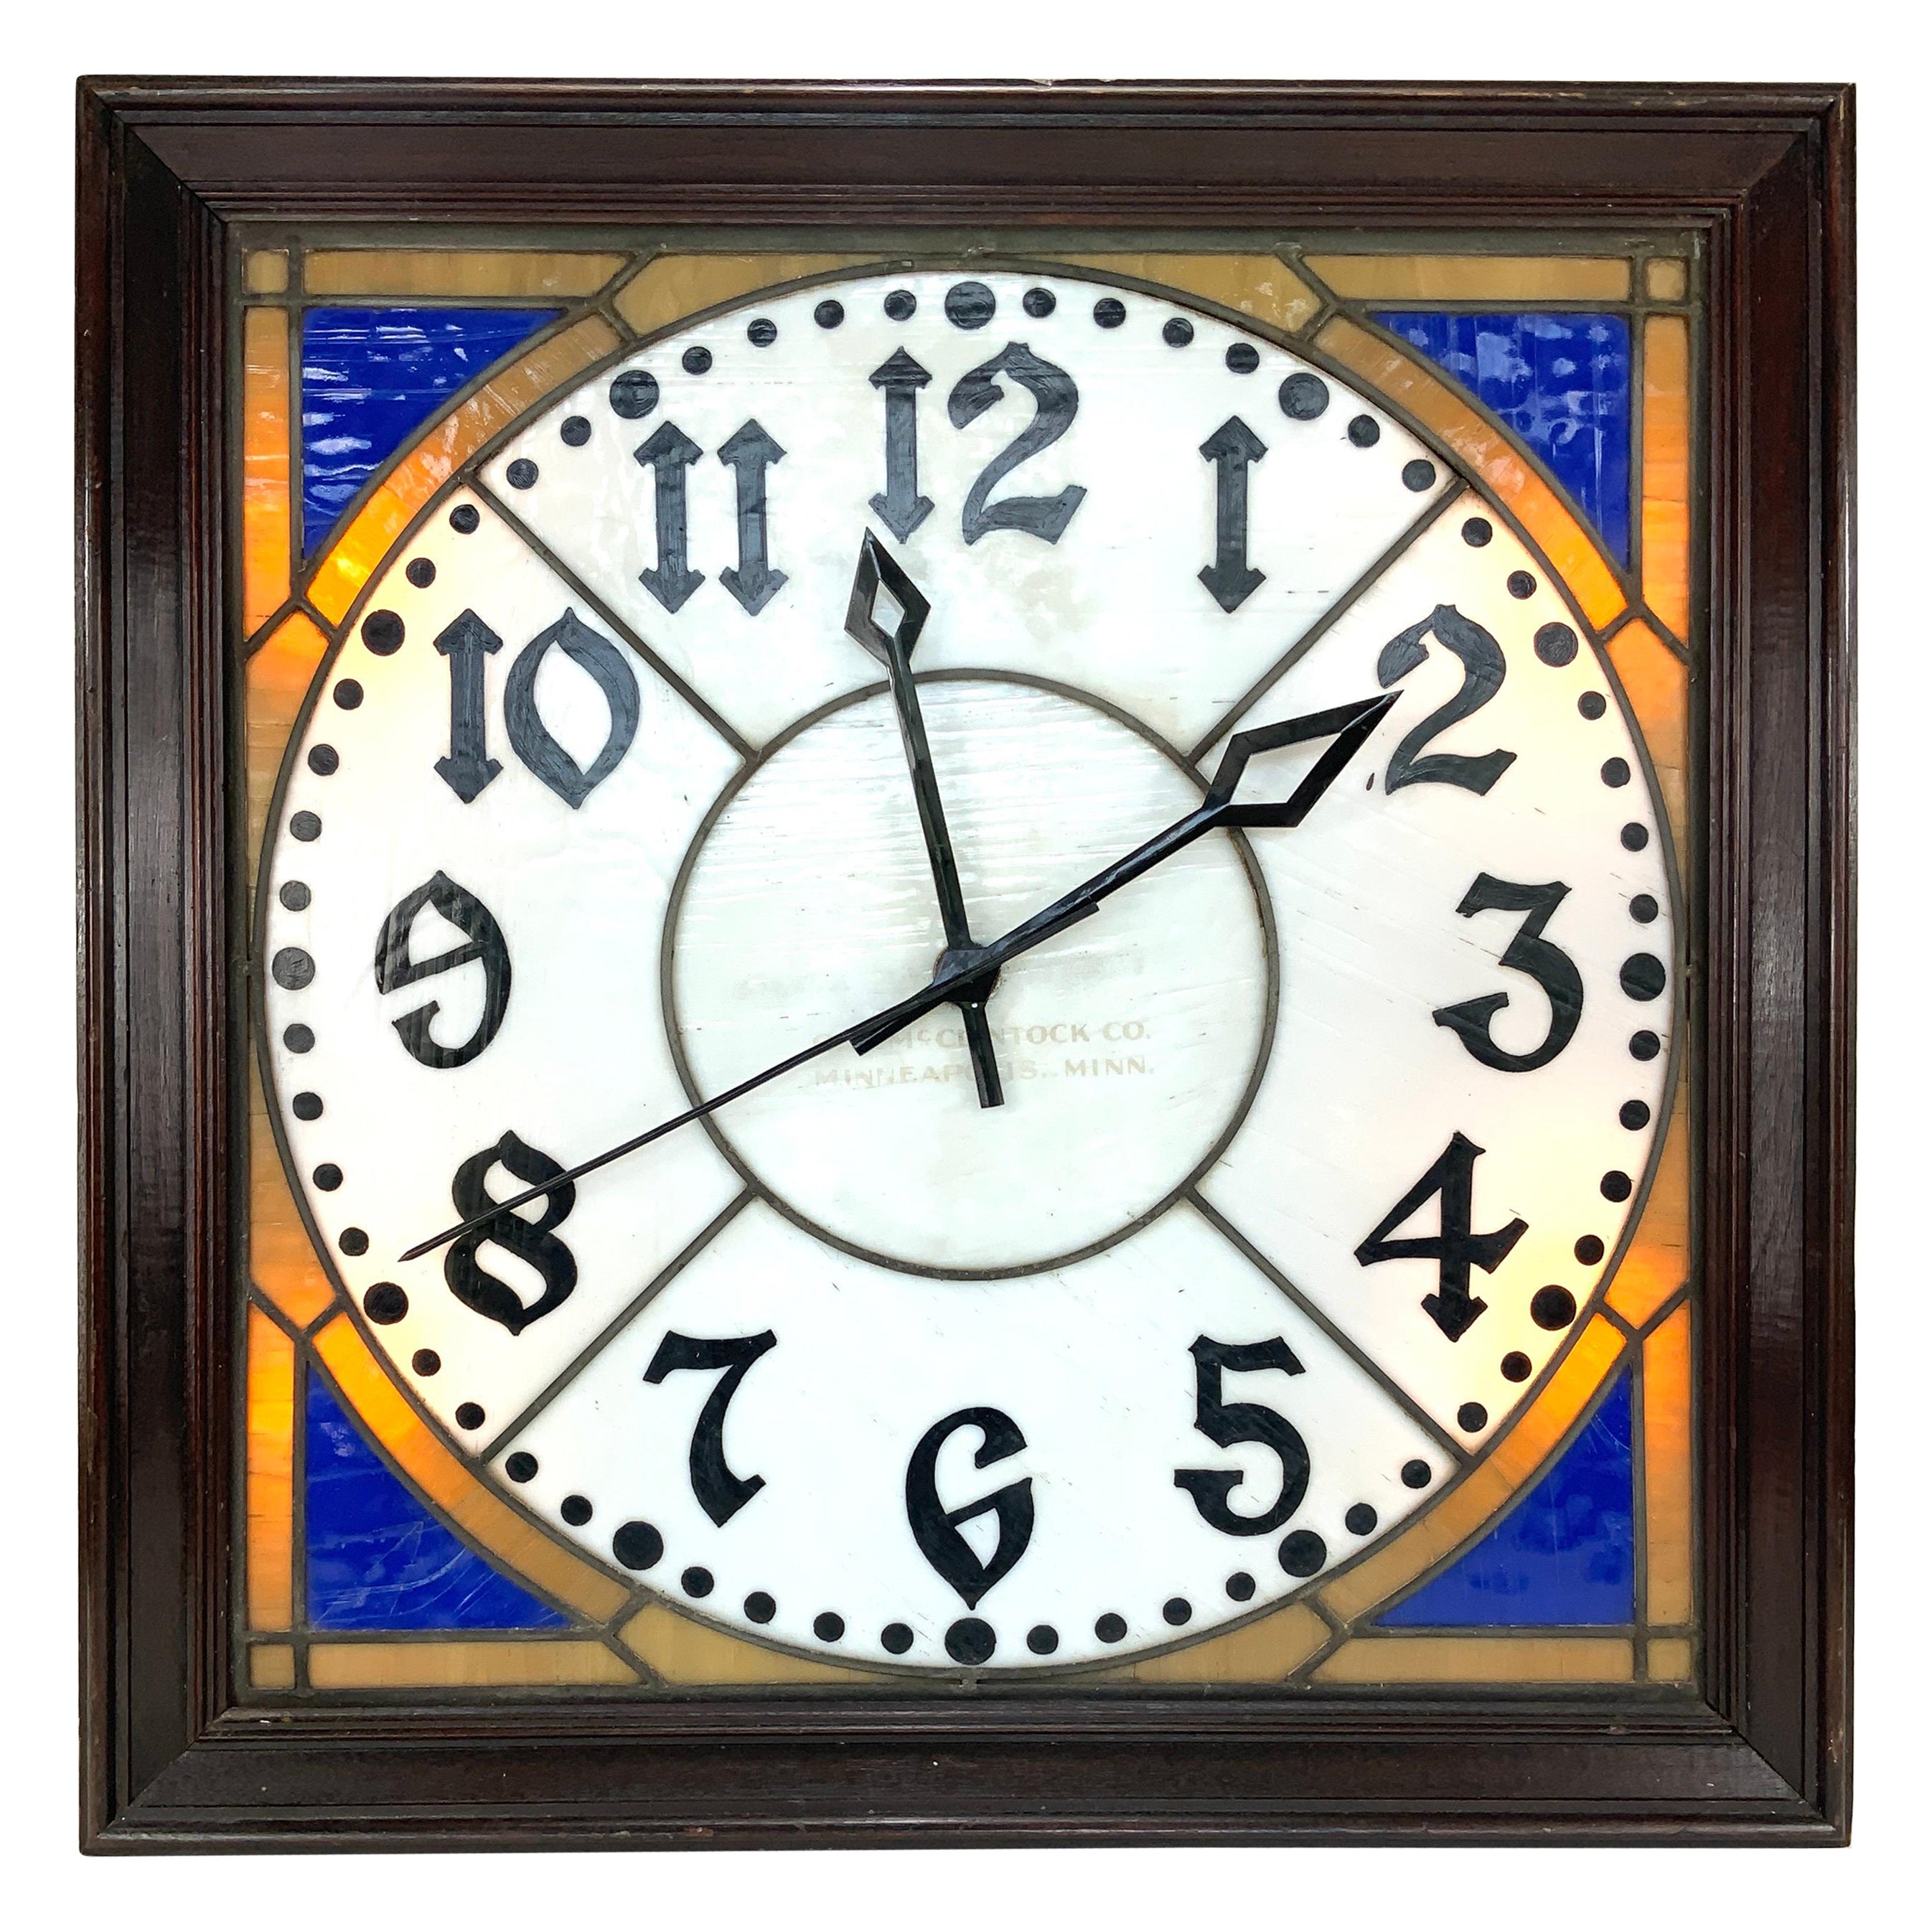 Rare O.B. McClintock Wall Bank Clock, c. 1920